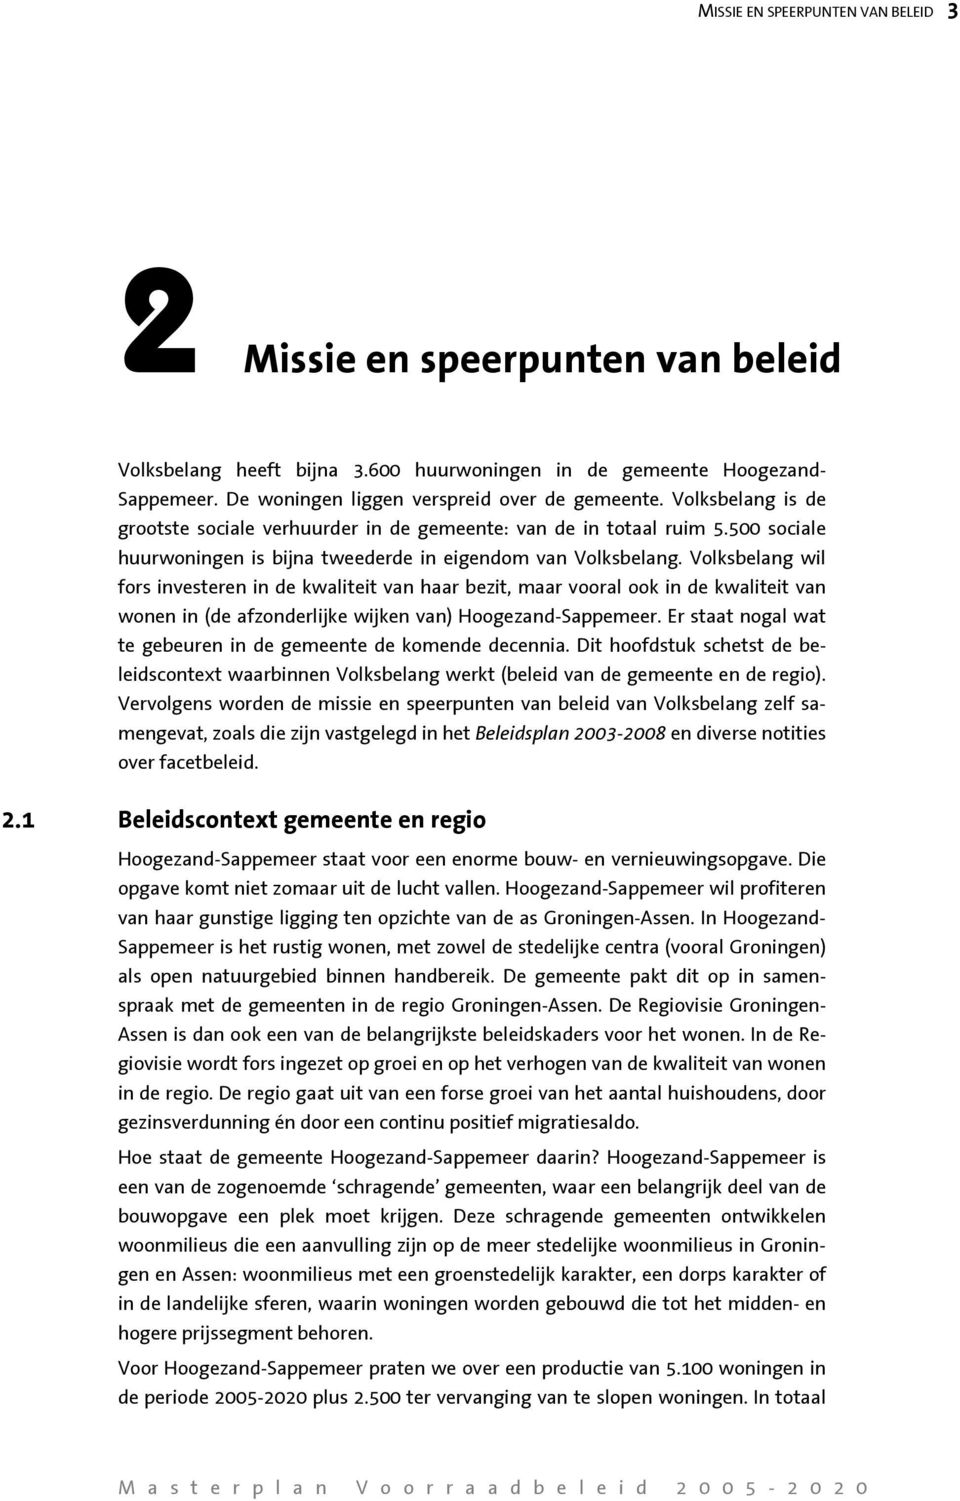 Volksbelang wil fors investeren in de kwaliteit van haar bezit, maar vooral ook in de kwaliteit van wonen in (de afzonderlijke wijken van) Hoogezand-Sappemeer.